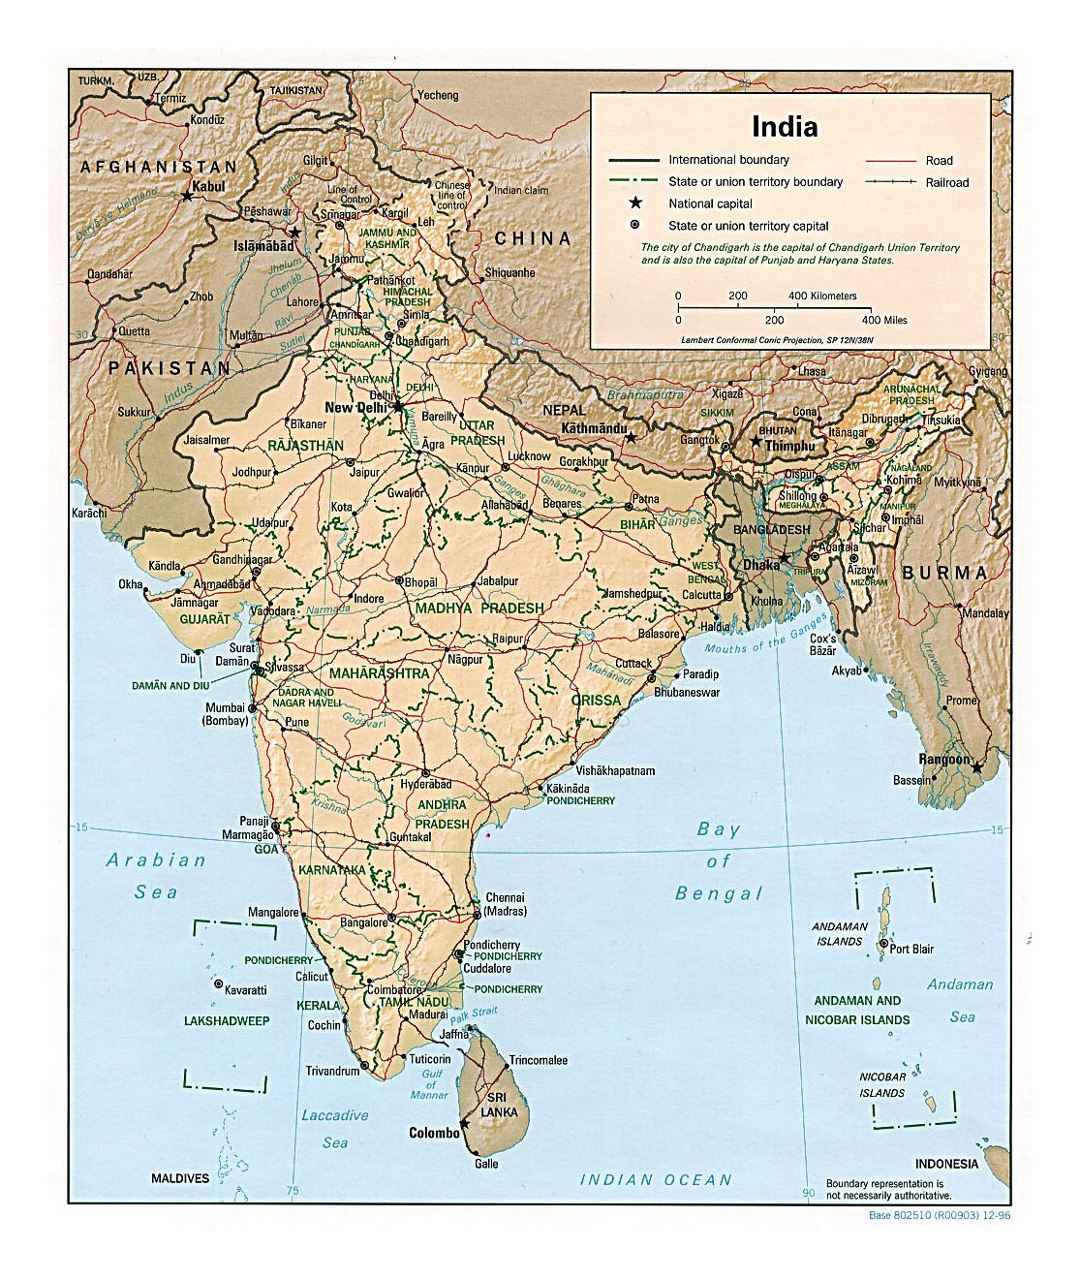 Detallado mapa político y administrativo de la India con relieve, carreteras, ferrocarriles y ciudades - 1996